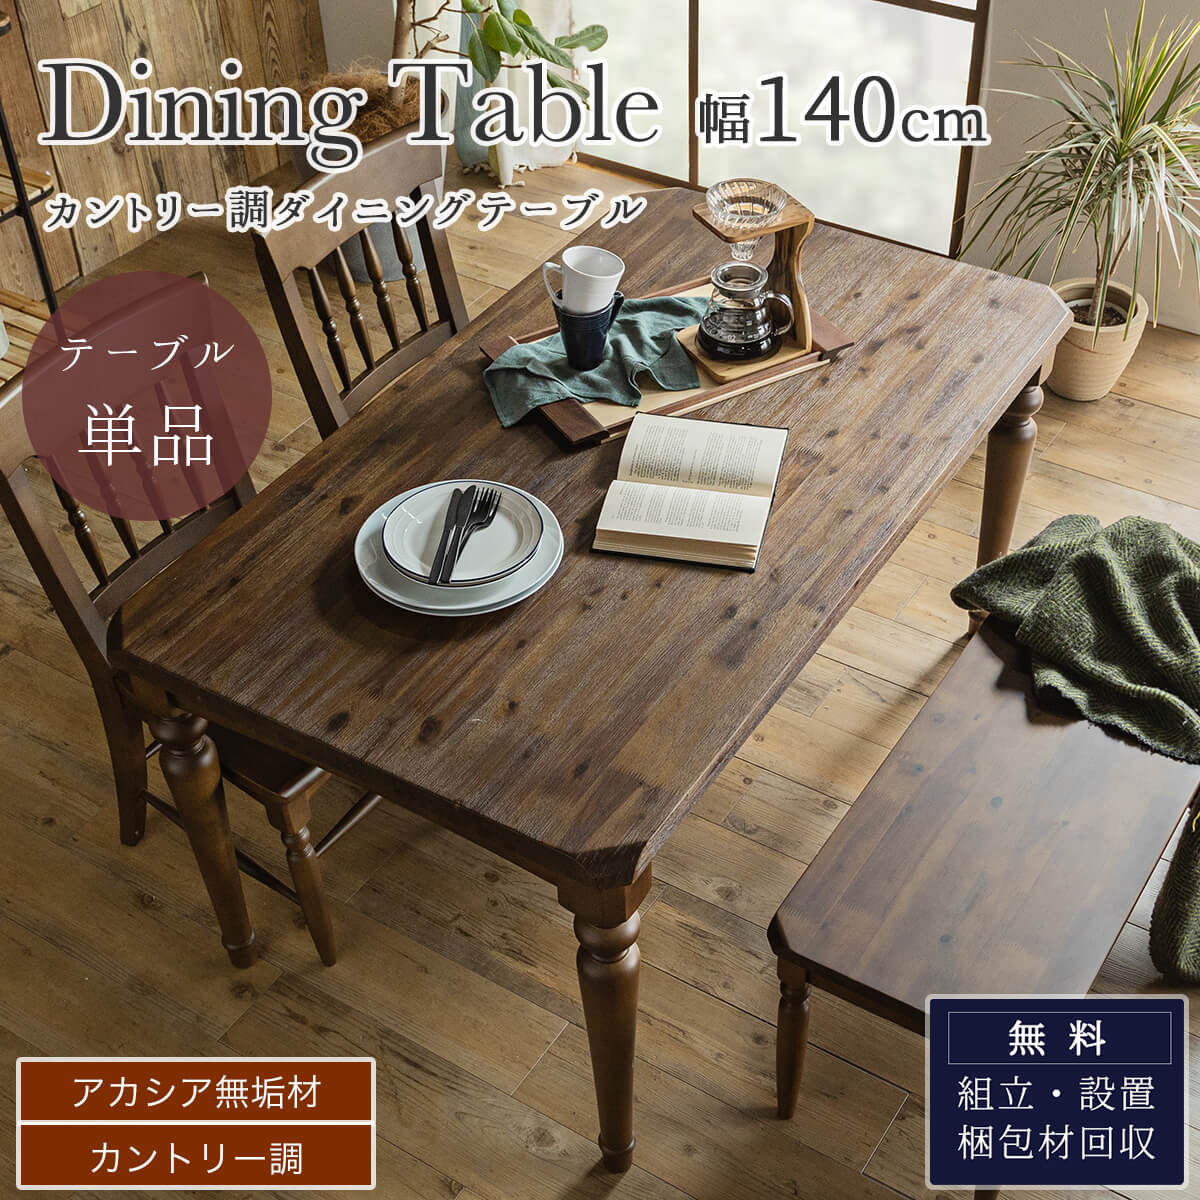 F01112_ダイニング 食卓 木目 北欧 日本 おしゃれ おすすめ ダイニングテーブル 天然木 シンプル 無垢 ナチュラル カントリー 幅140cm